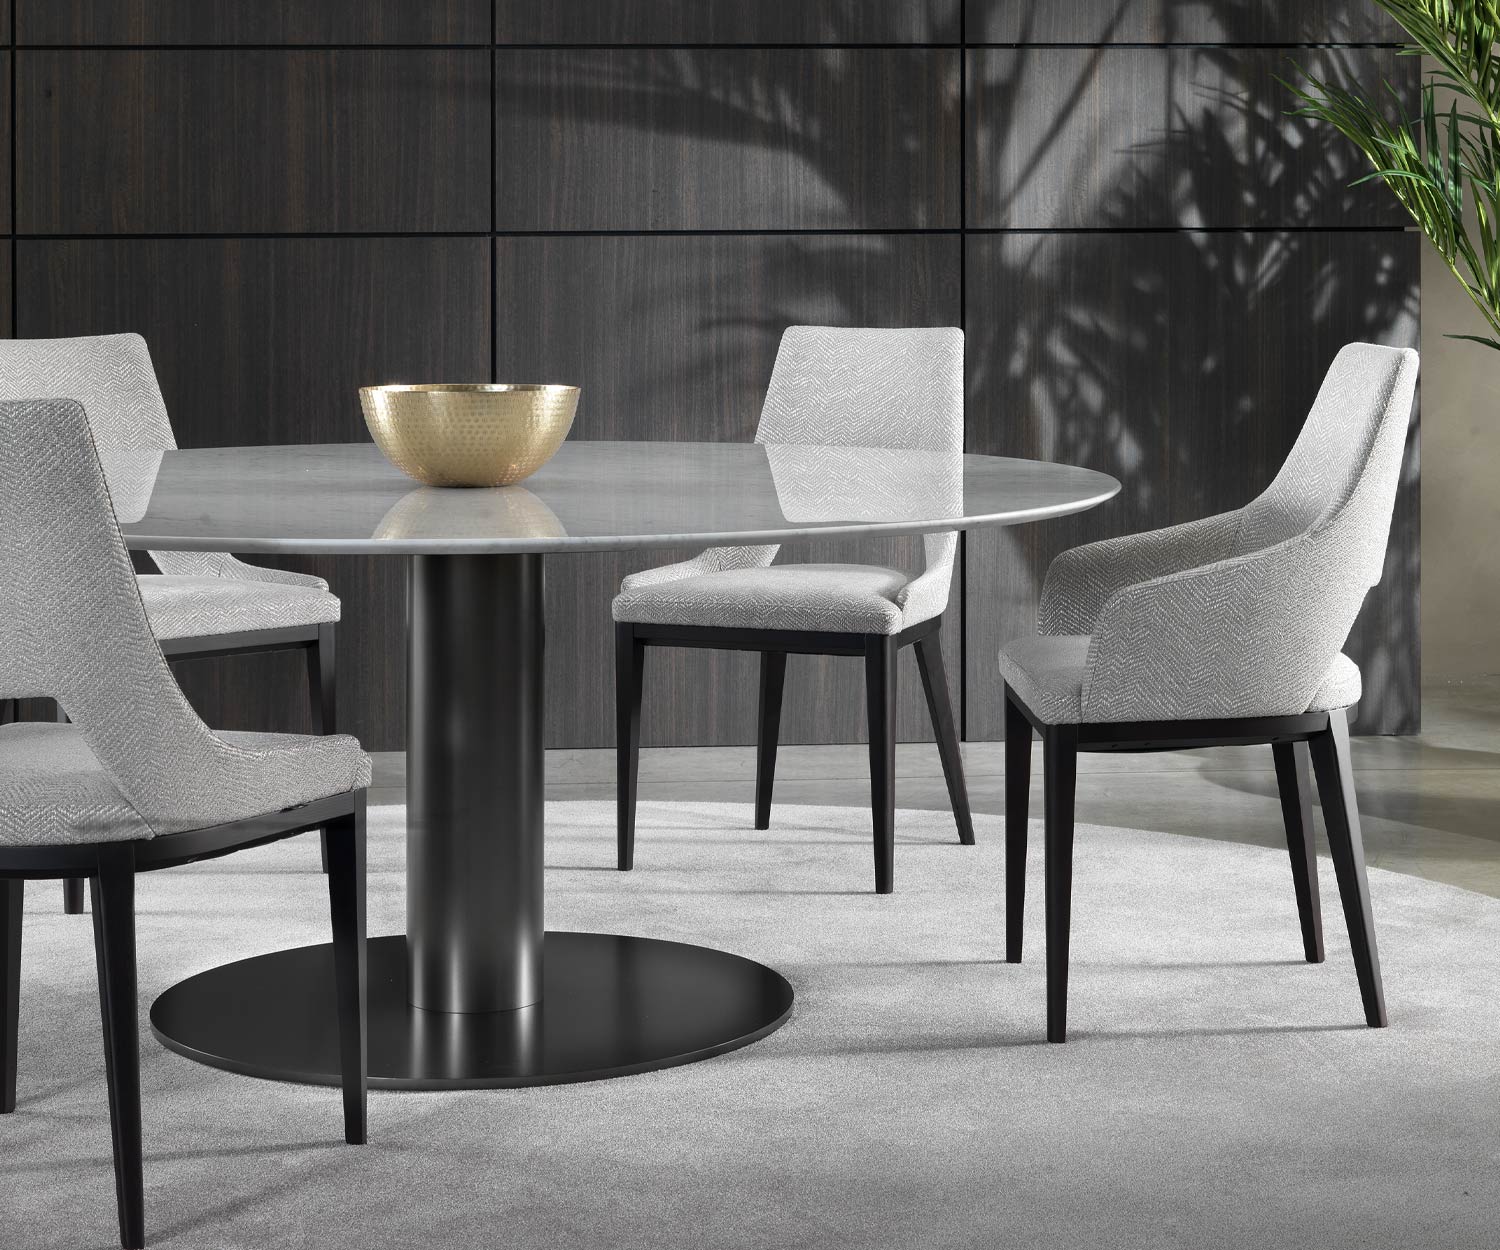 Elégante table de salle à manger design en marbre Marelli Break dans la zone salle à manger avec quatre chaises de salle à manger